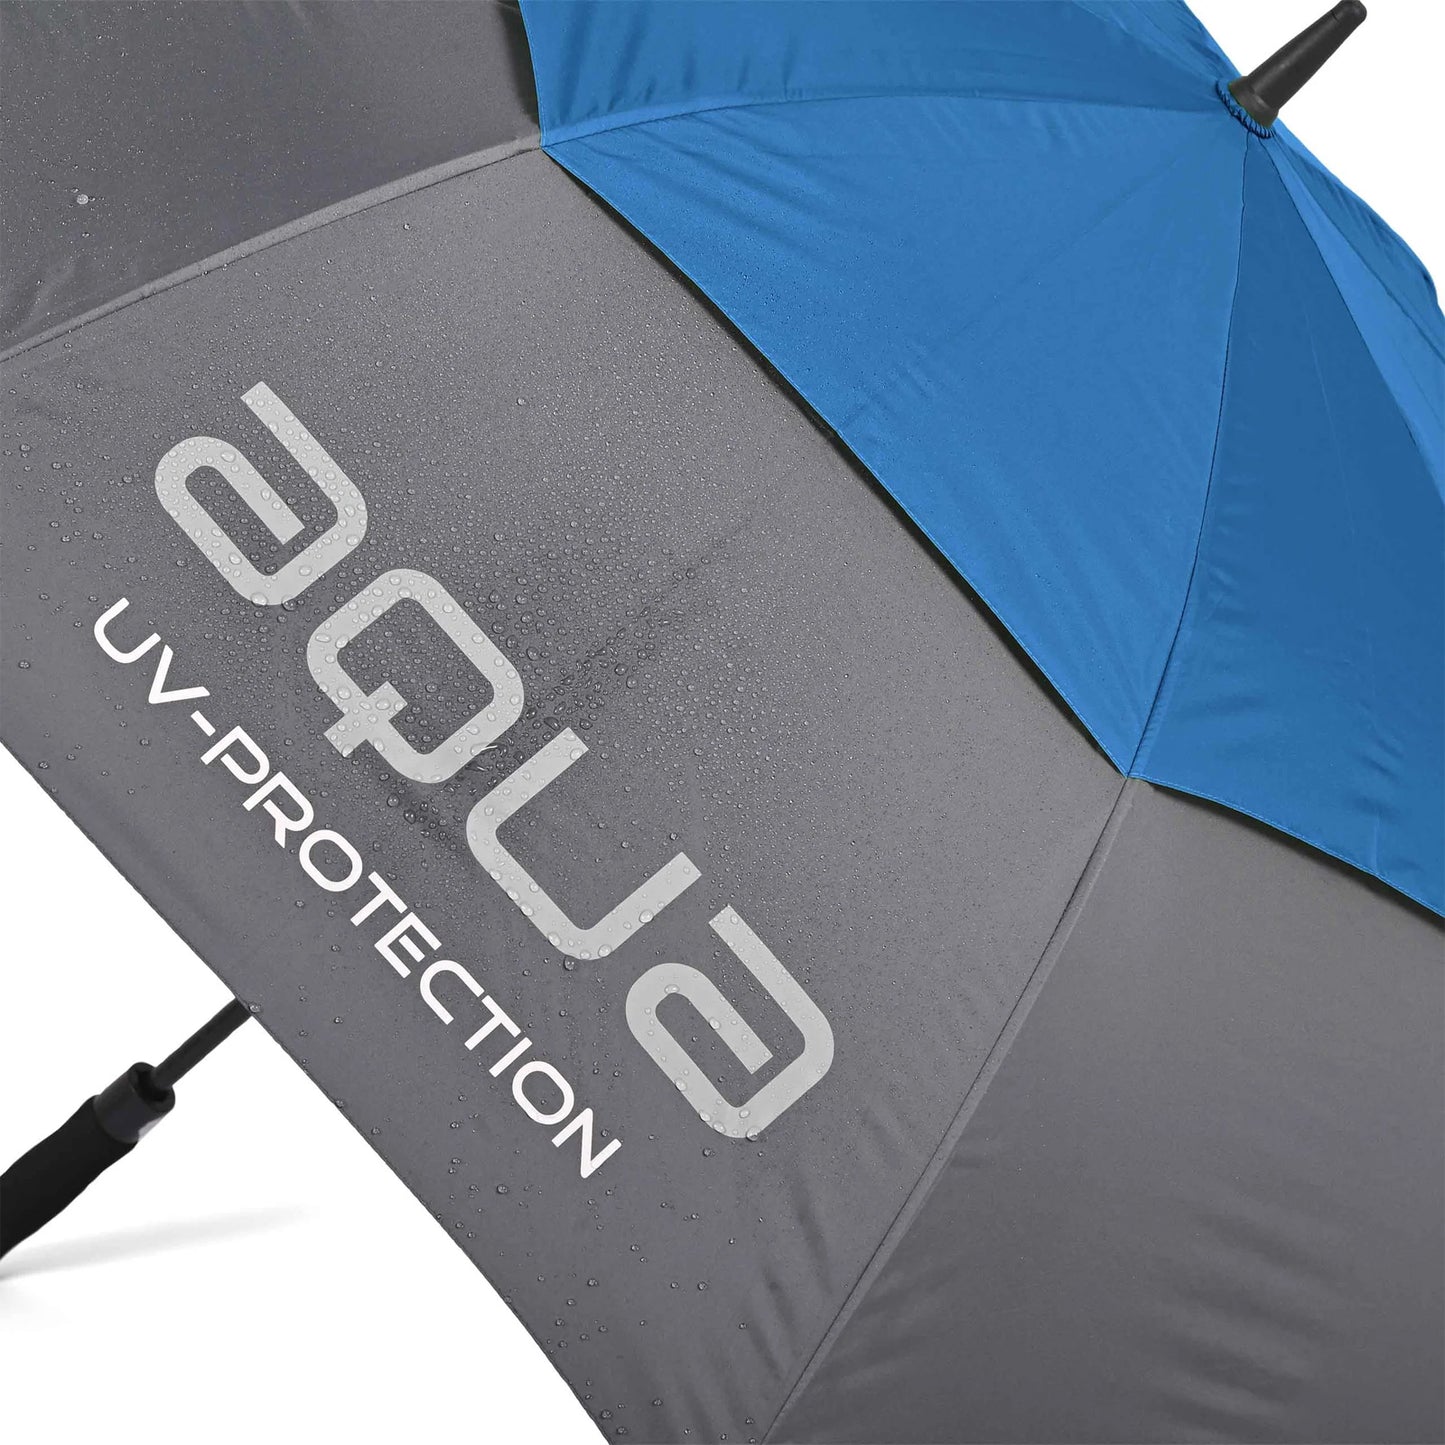 Big Max Aqua UV 58" Double Canopy Umbrella